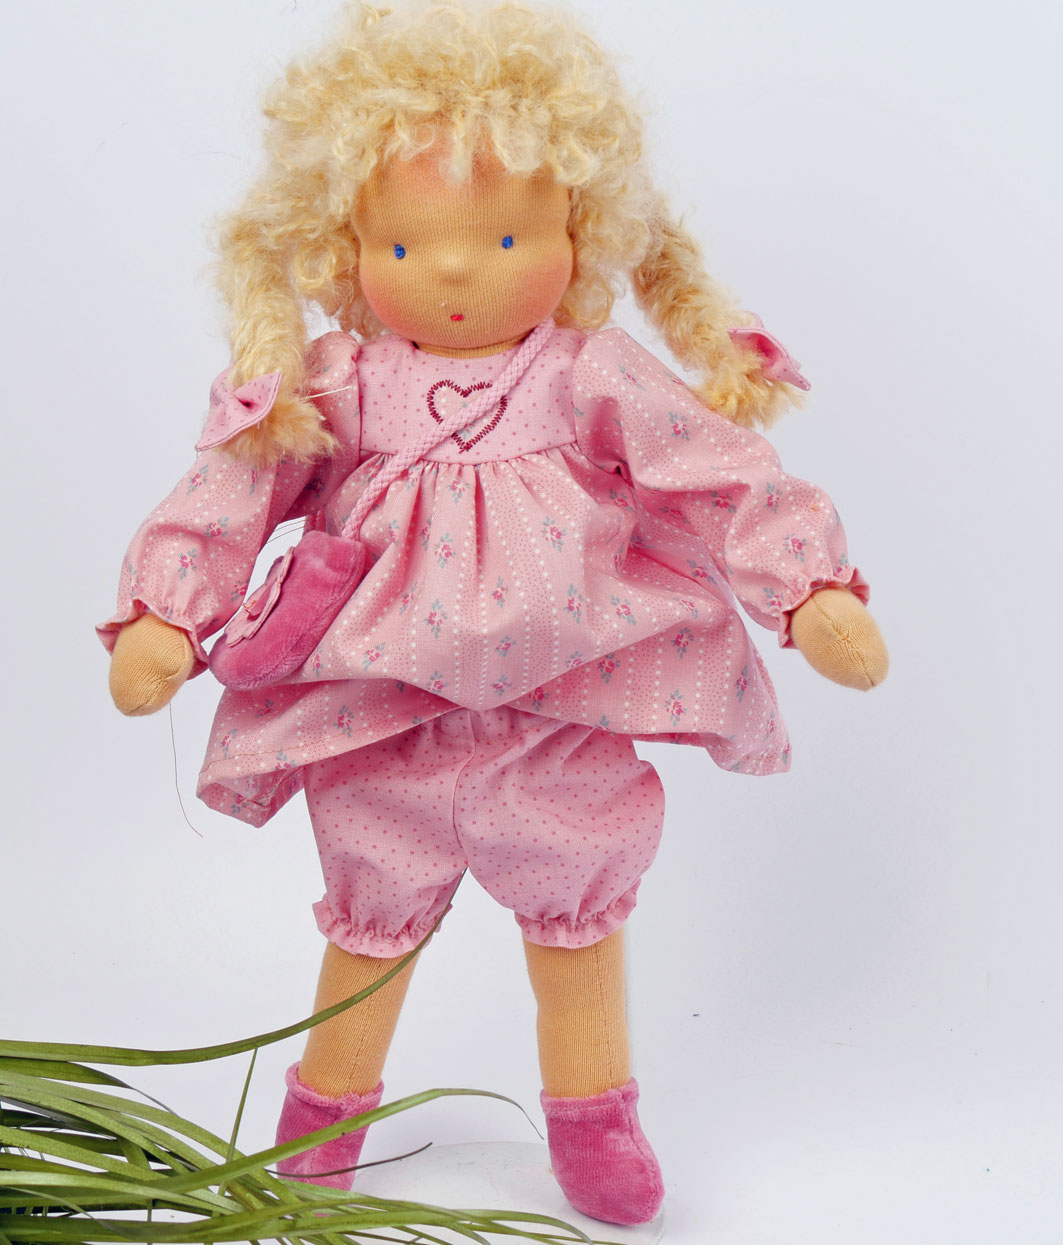 Kleiderset/Nähset für Bekleidung einer 30 cm Puppe, rosa Prinzessin mit Blümchen-Applikation, Schnitte und Anleitung incl. Stoff